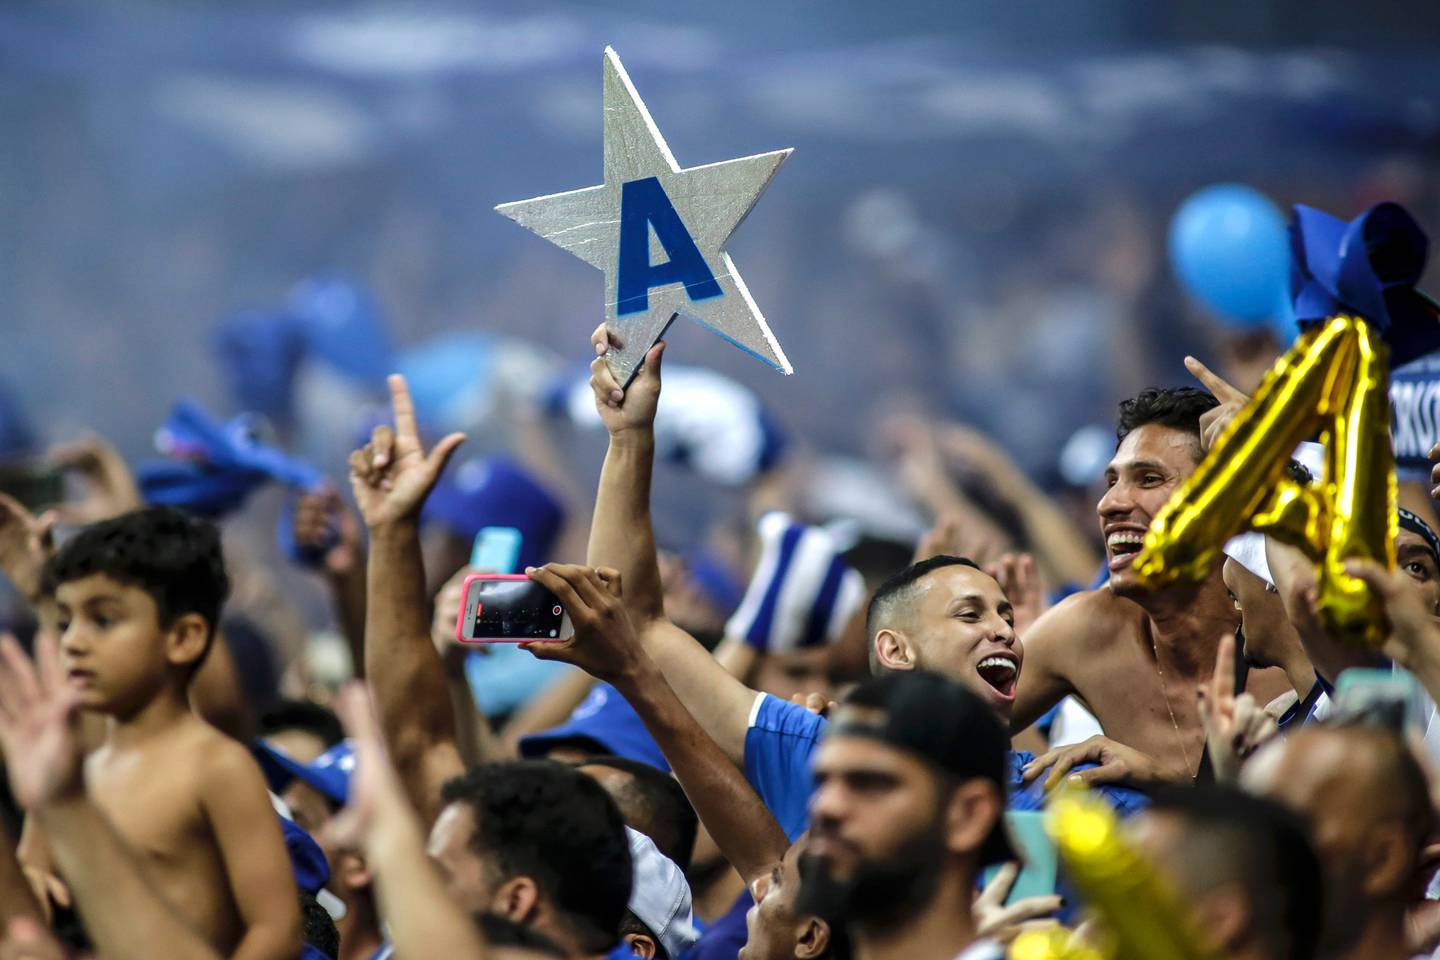 El Cruzeiro de Belo Horizonte, propiedad del exastro brasileño Ronaldo "El Fenómeno", garantizó este miércoles su regreso en 2023 a la primera división del fútbol de Brasil, luego de jugar tres temporadas en la Serie B